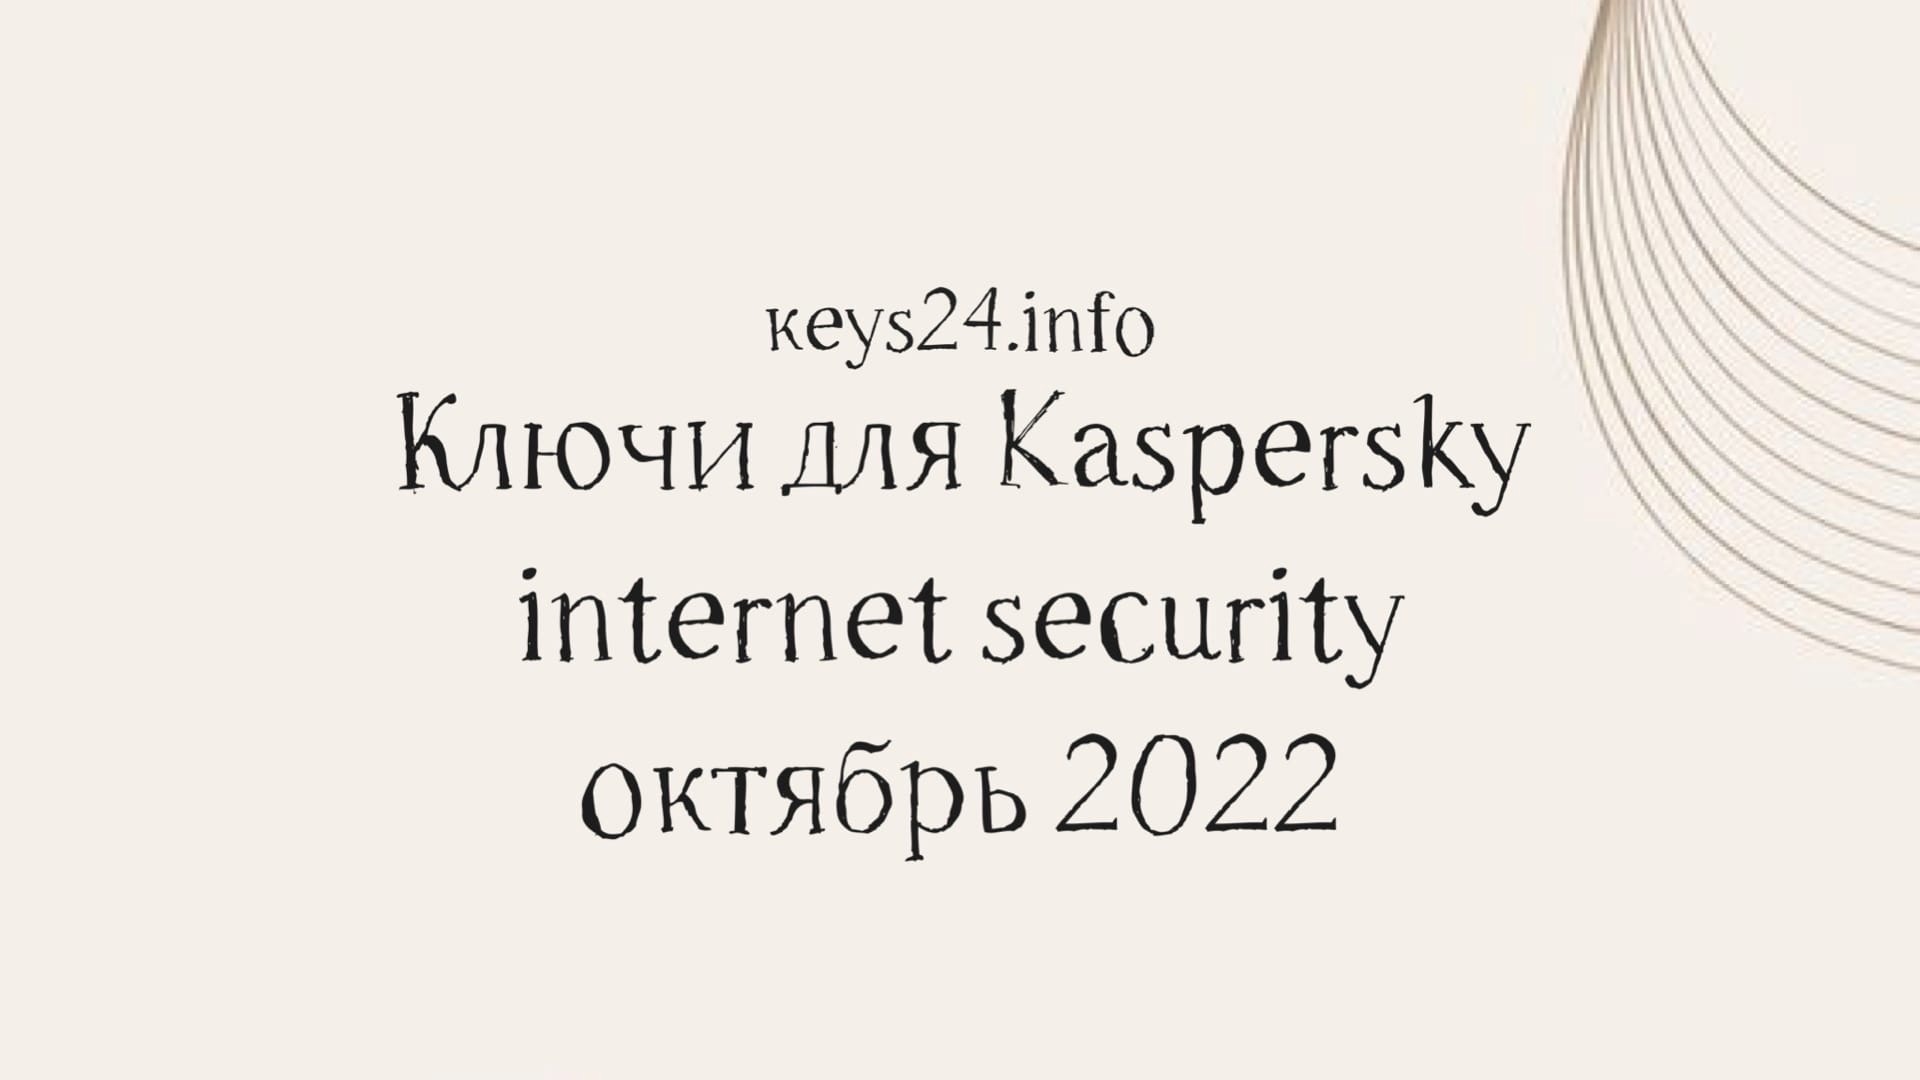 keys for kaspersky internet security october 2022